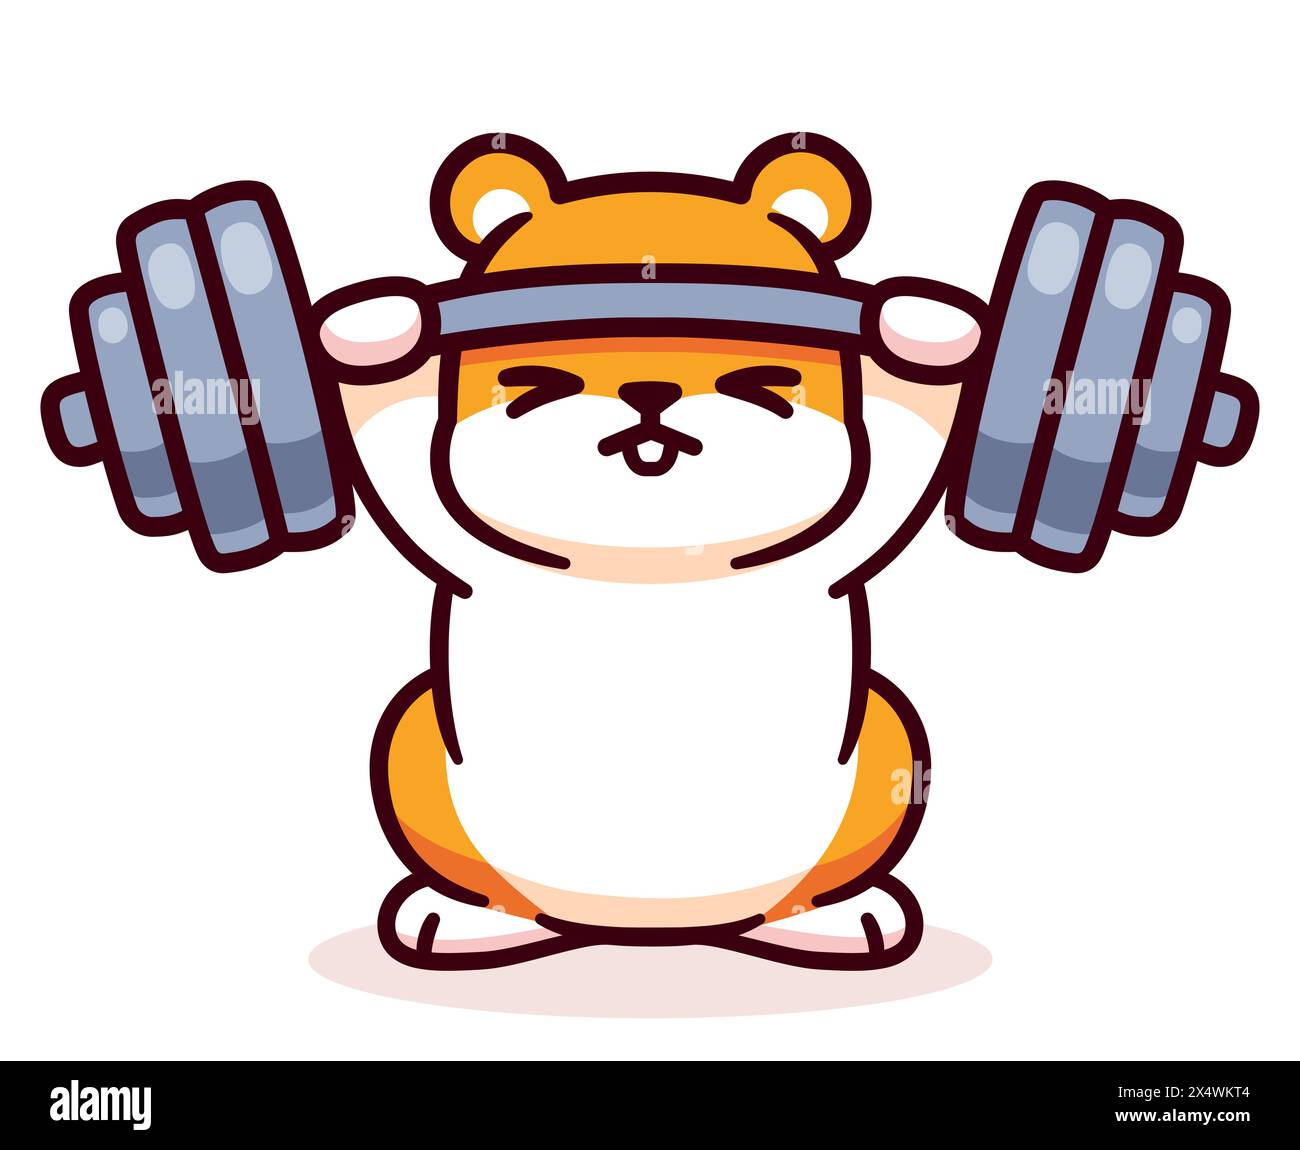 Hamster de dessin animé mignon soulevant la barre. Dessin drôle de fitness et d'exercice, illustration vectorielle de clip art. Illustration de Vecteur